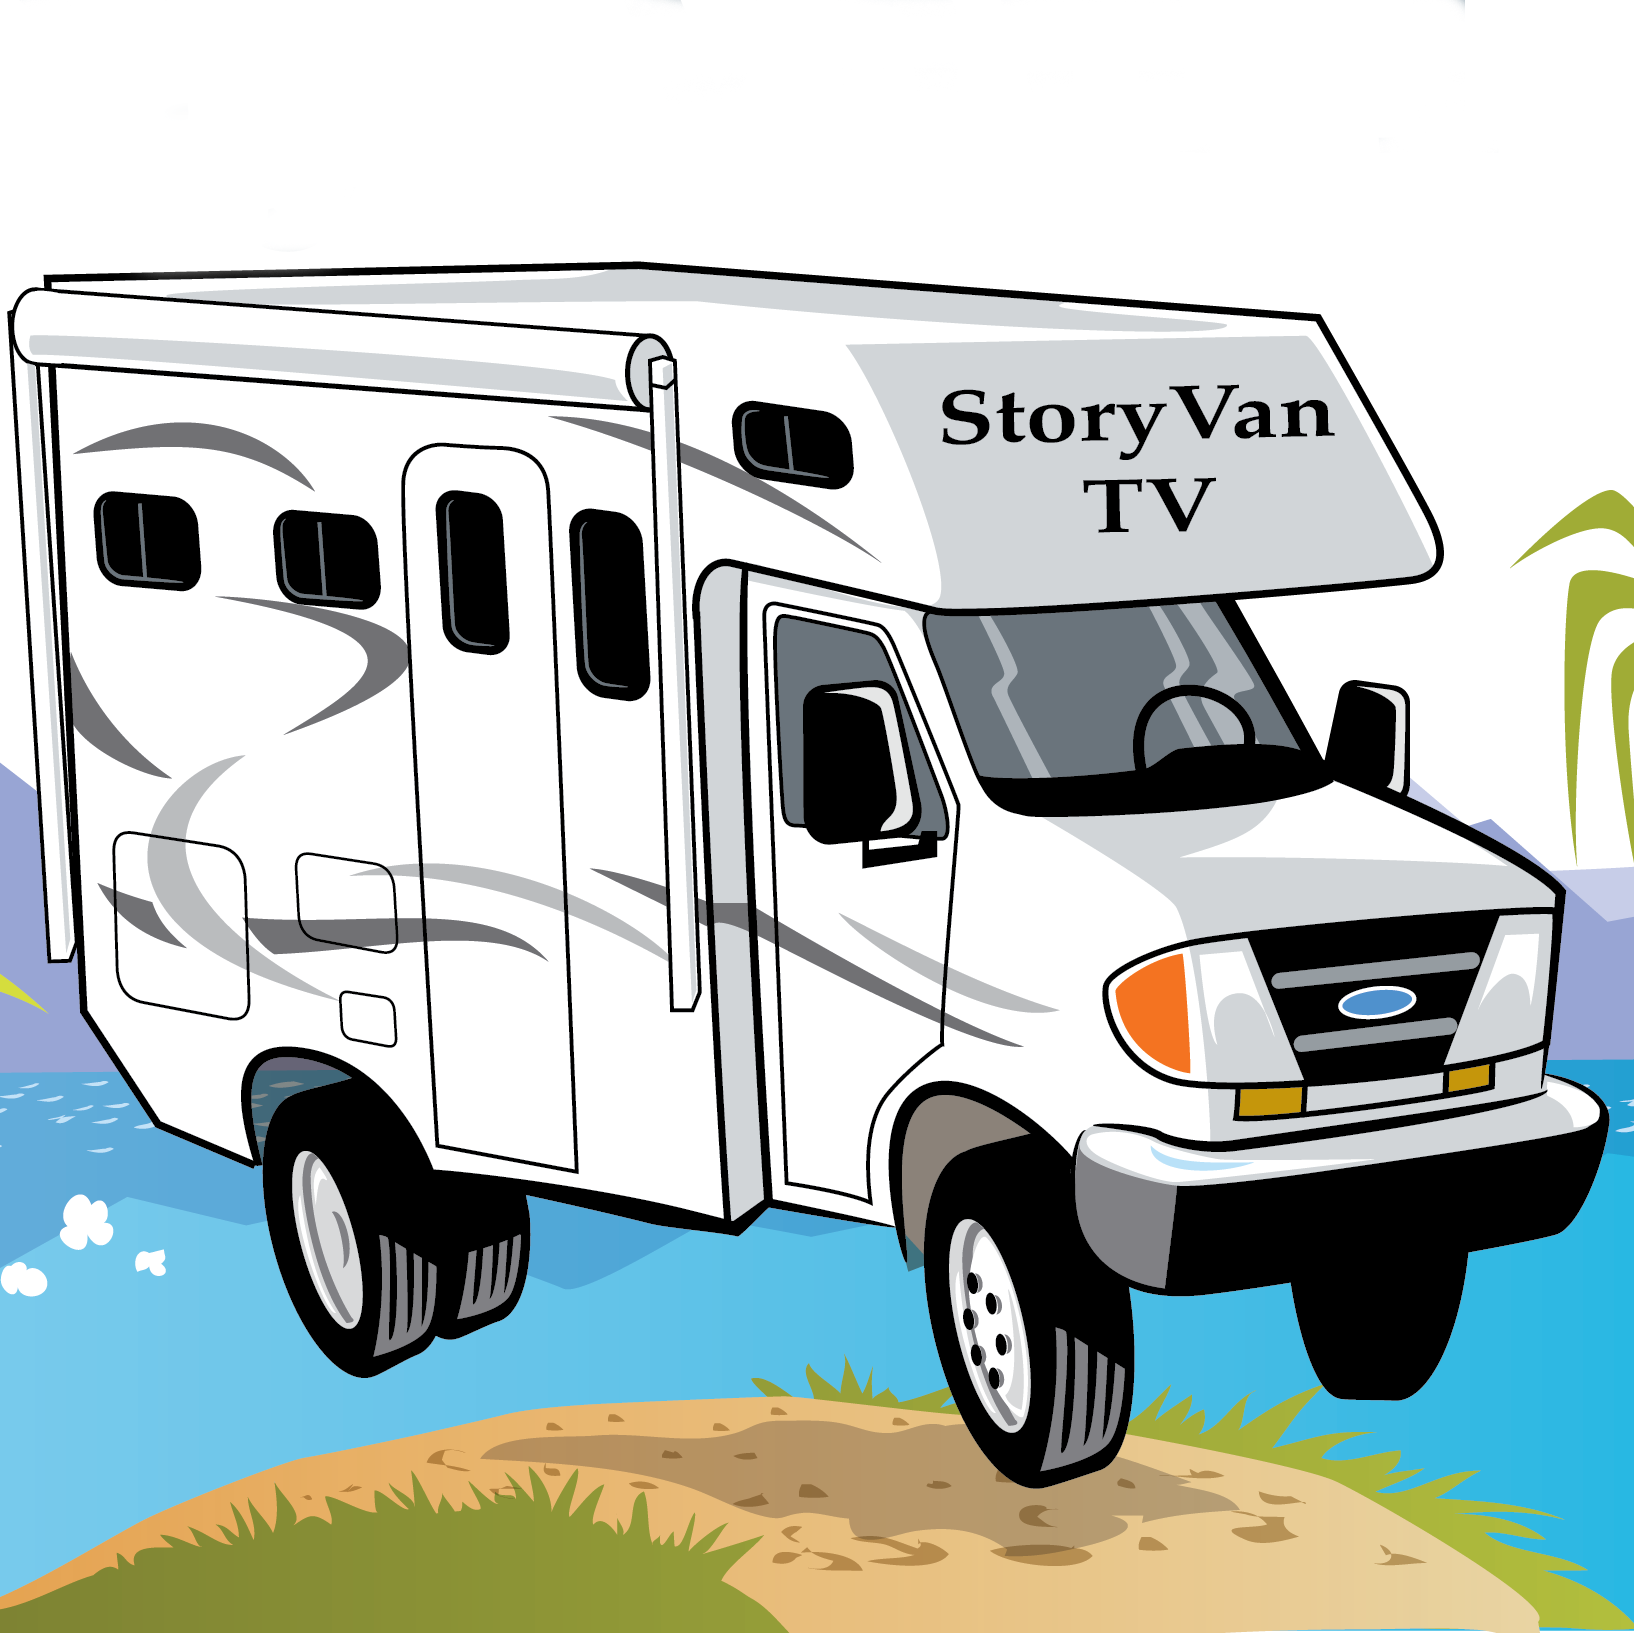 Receive Story Van TV News!